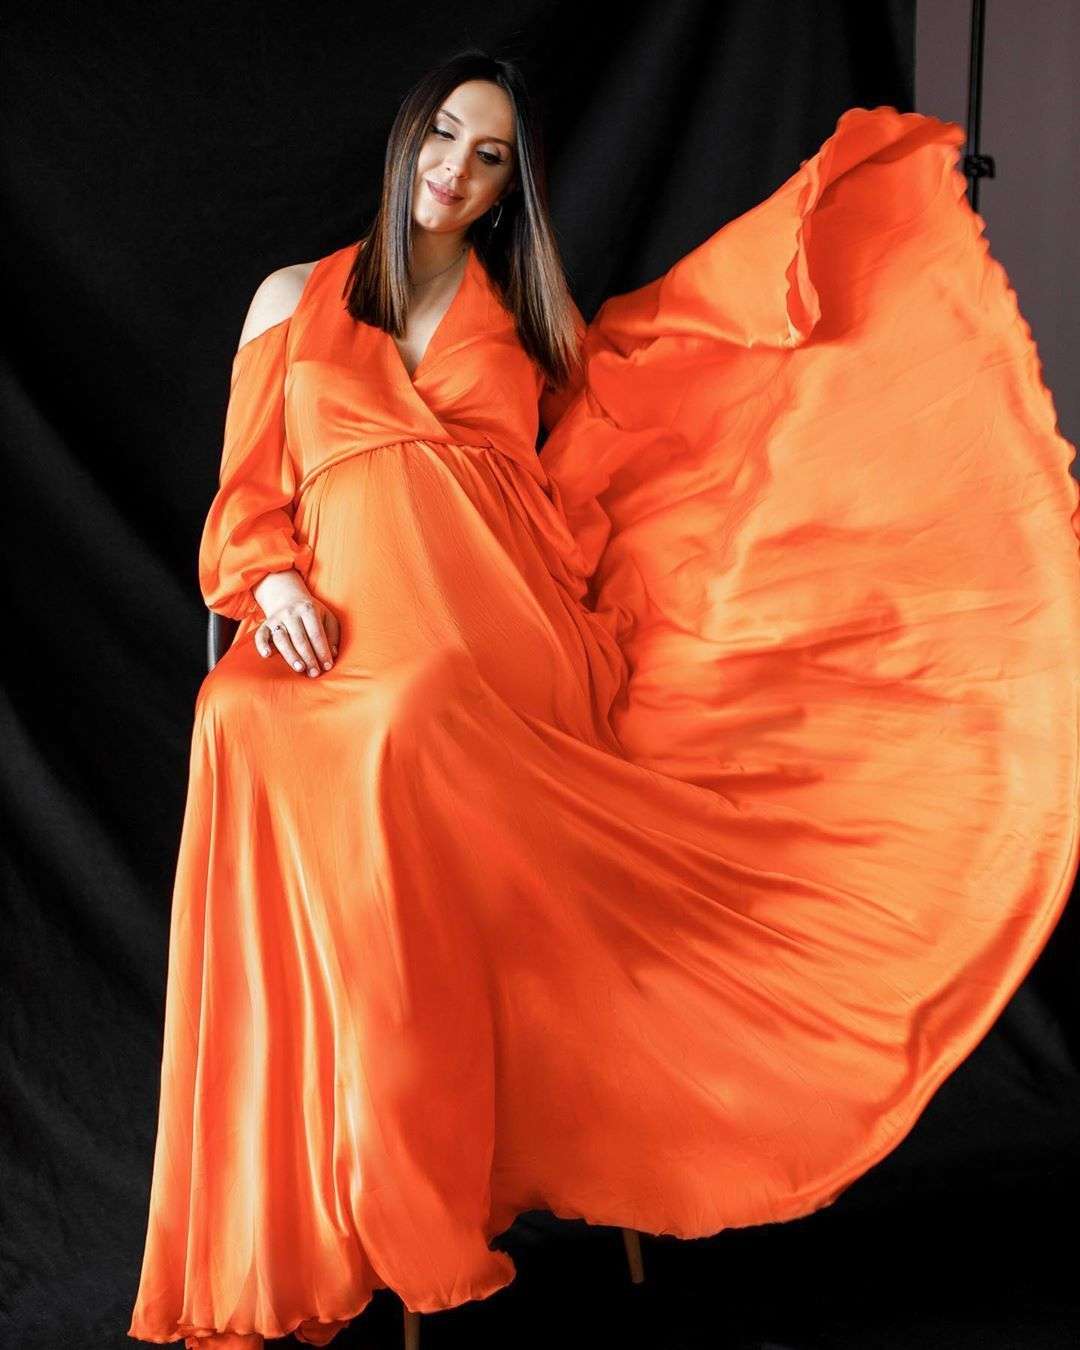 Словно цветок: беременная Джамала в коралловом платье поделилась романтическими фото - фото 480507